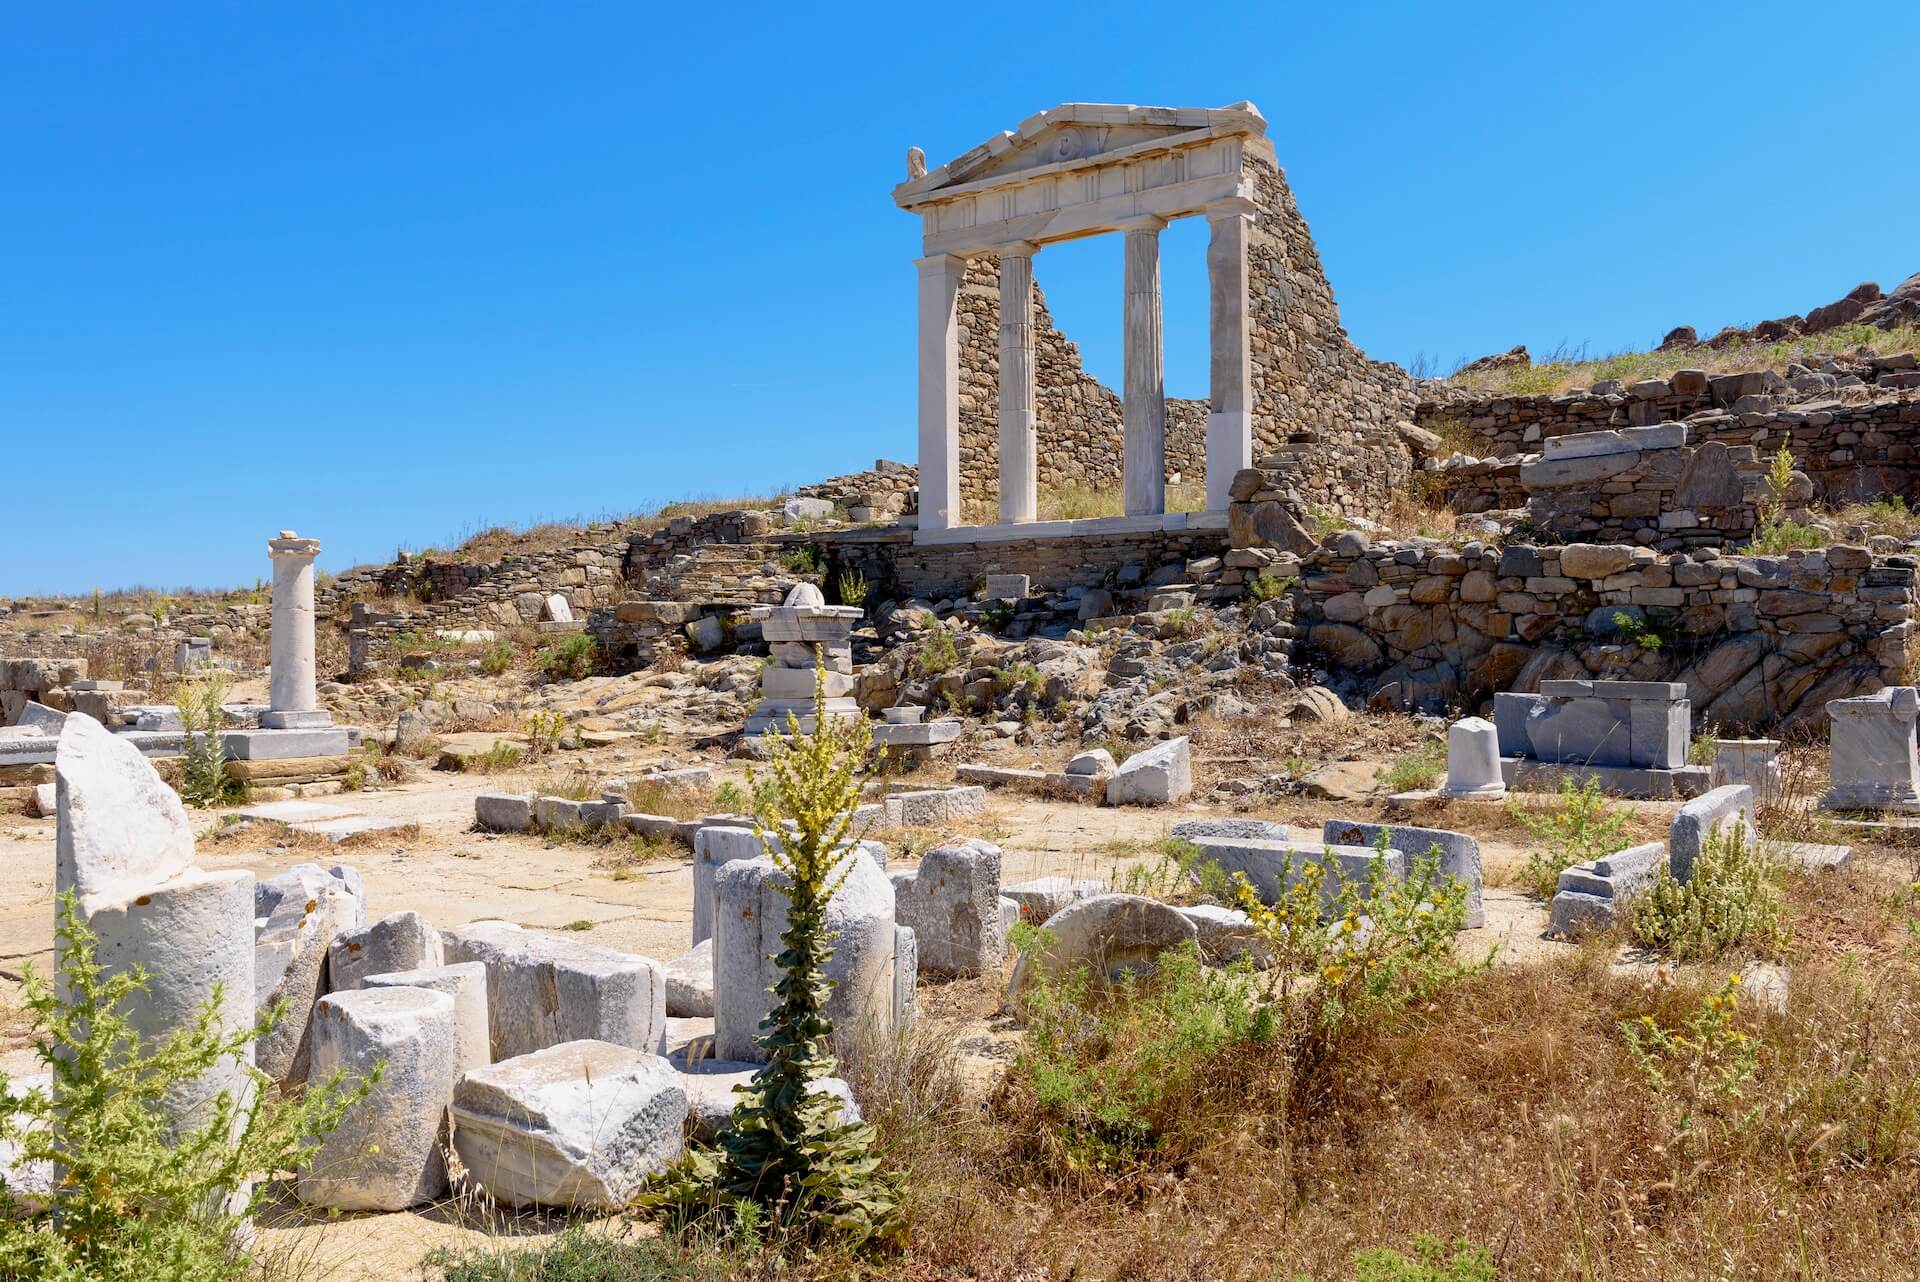 Ruins on Delos